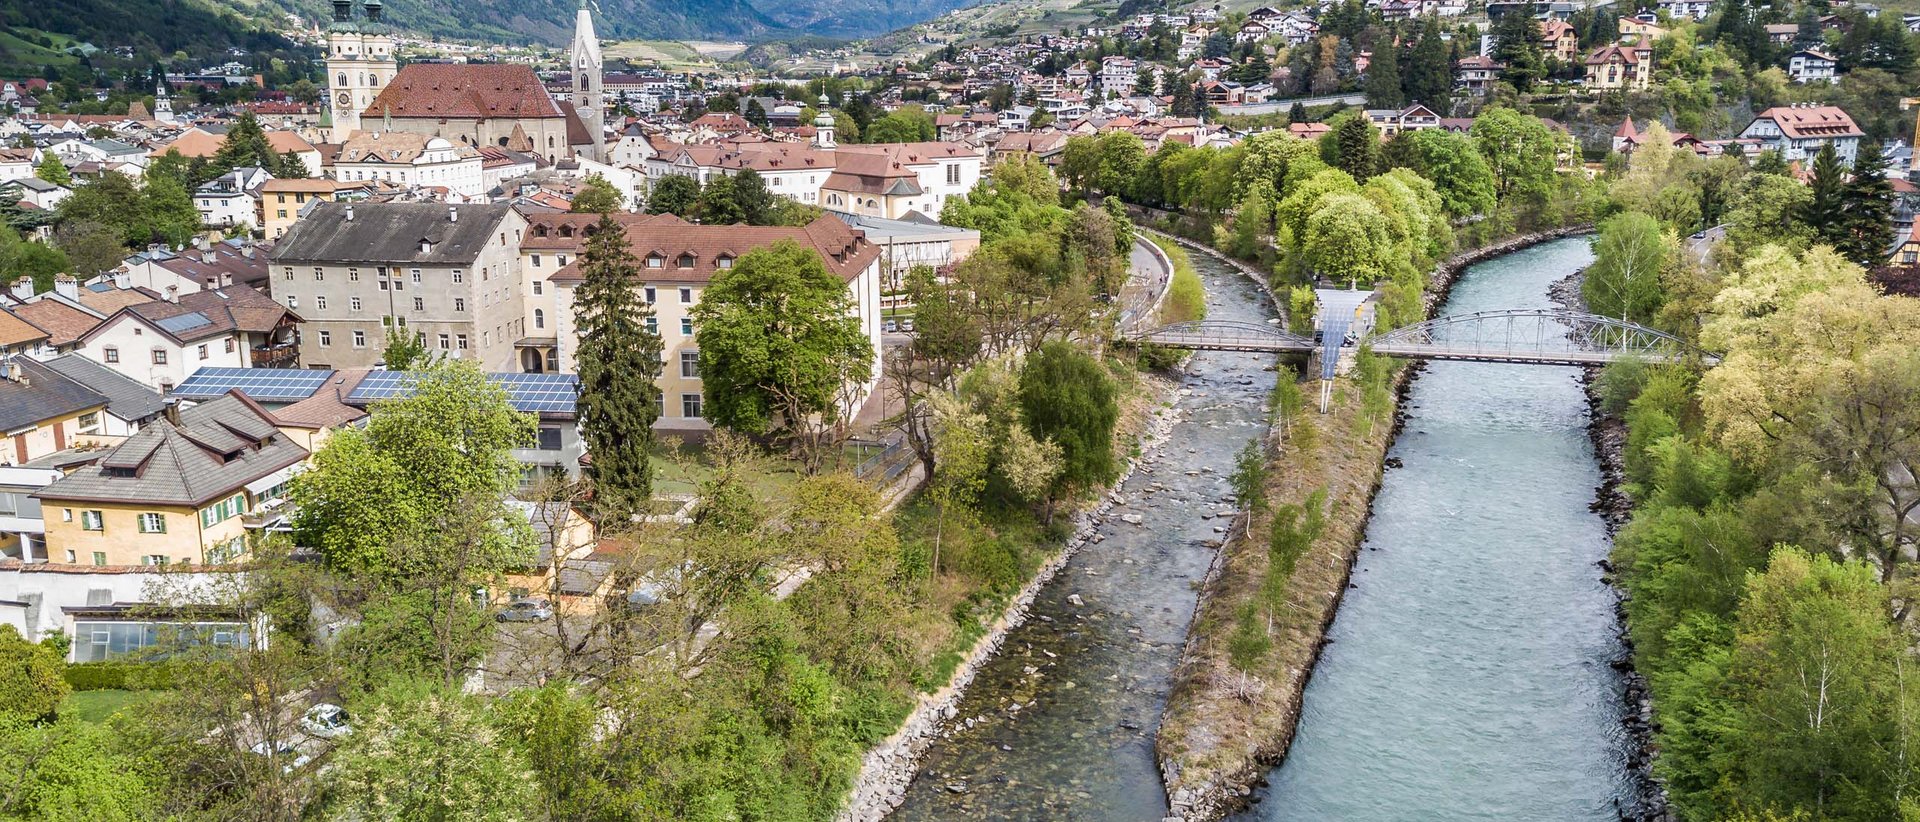 Ferien in Brixen – kennen Sie unsere Geheimtipps?